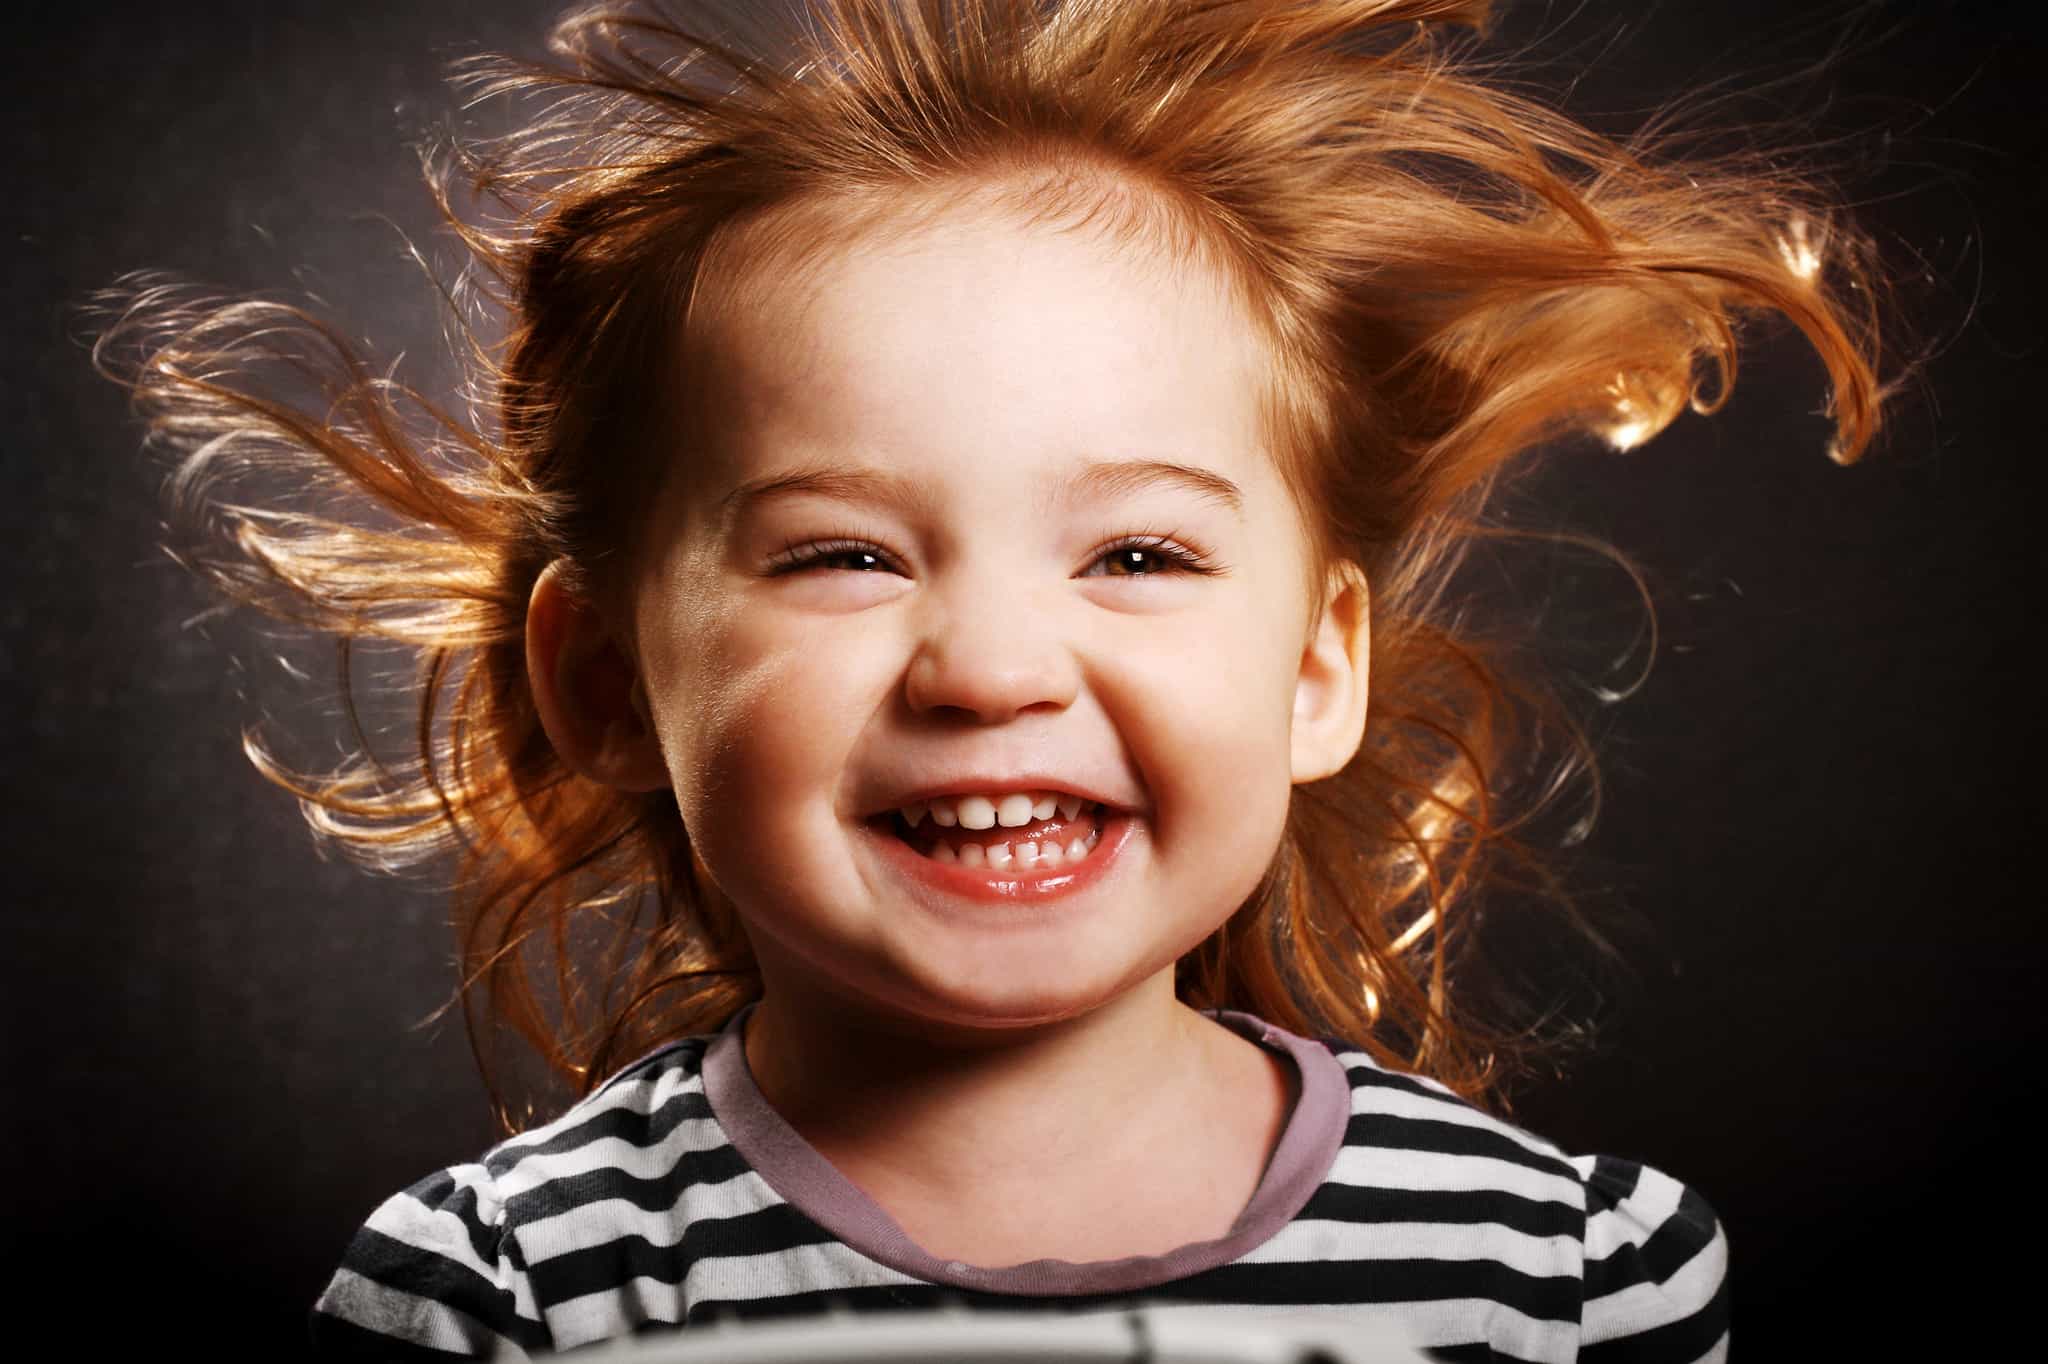 Улыбаться и смеяться чаще. Ребенок улыбается. Дети смеются. Радостное лицо ребенка. Веселые дети.